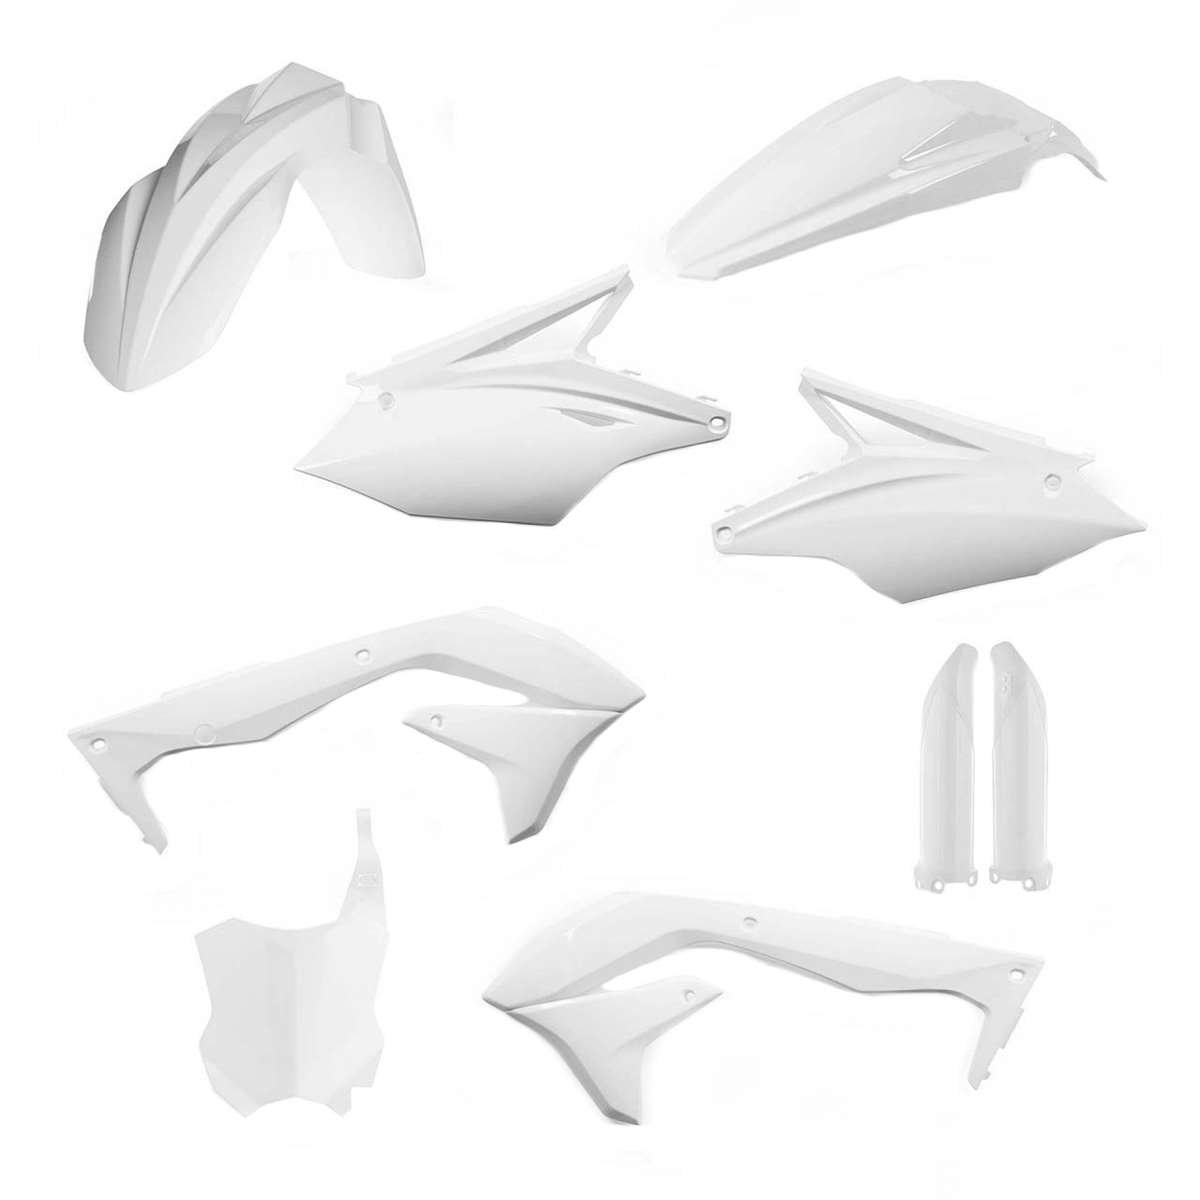 Acerbis Plastic Kit Full-Kit Kawasaki KXF 450 16-18, White